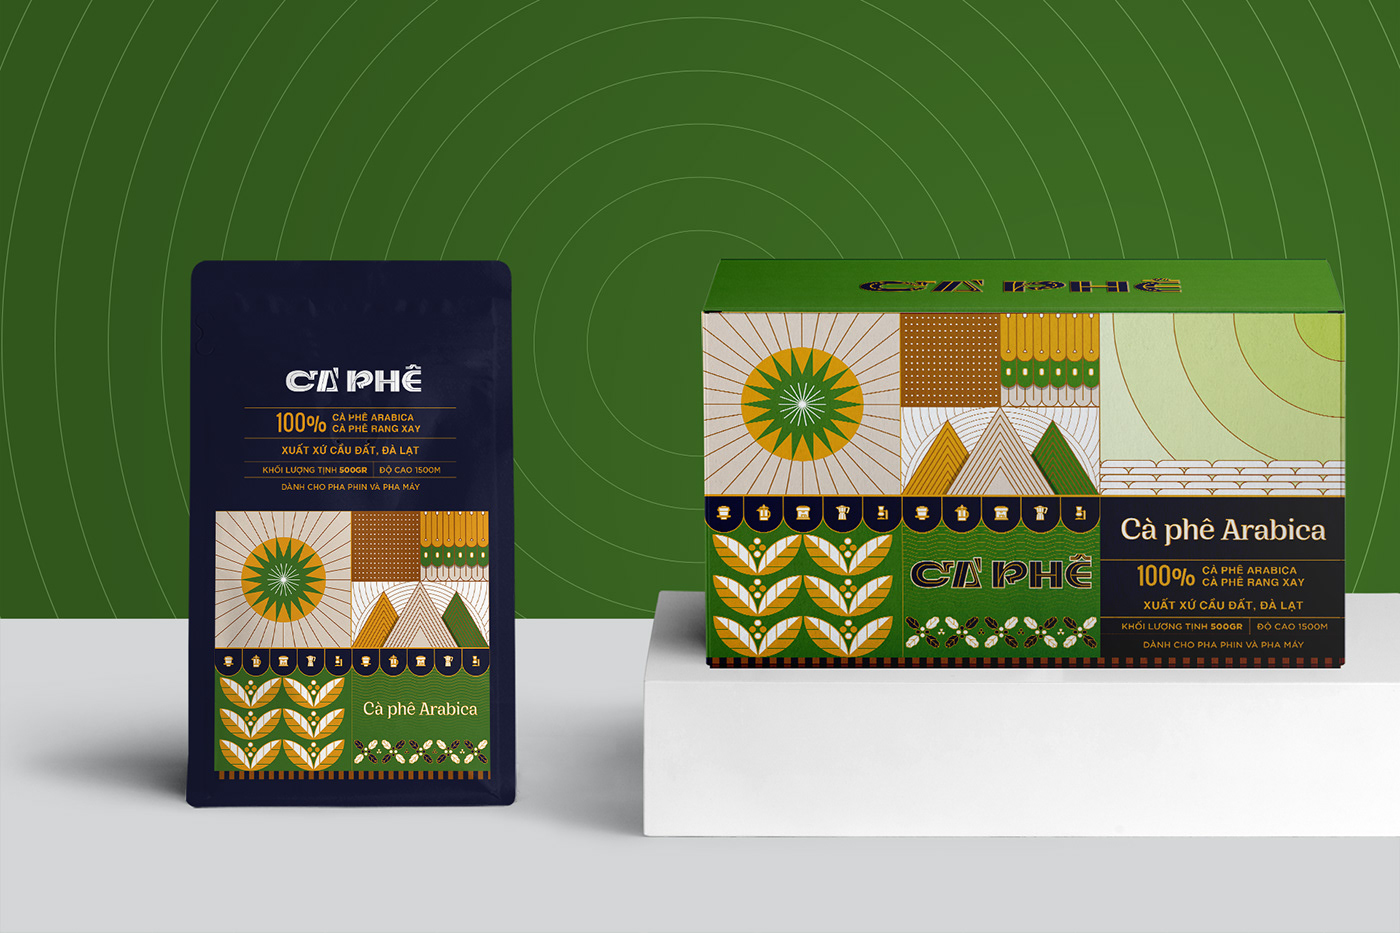 baobi baobicaphe caphe Coffee coffeepackaging Packaging thietkebaobi Typeface vietnam vupham